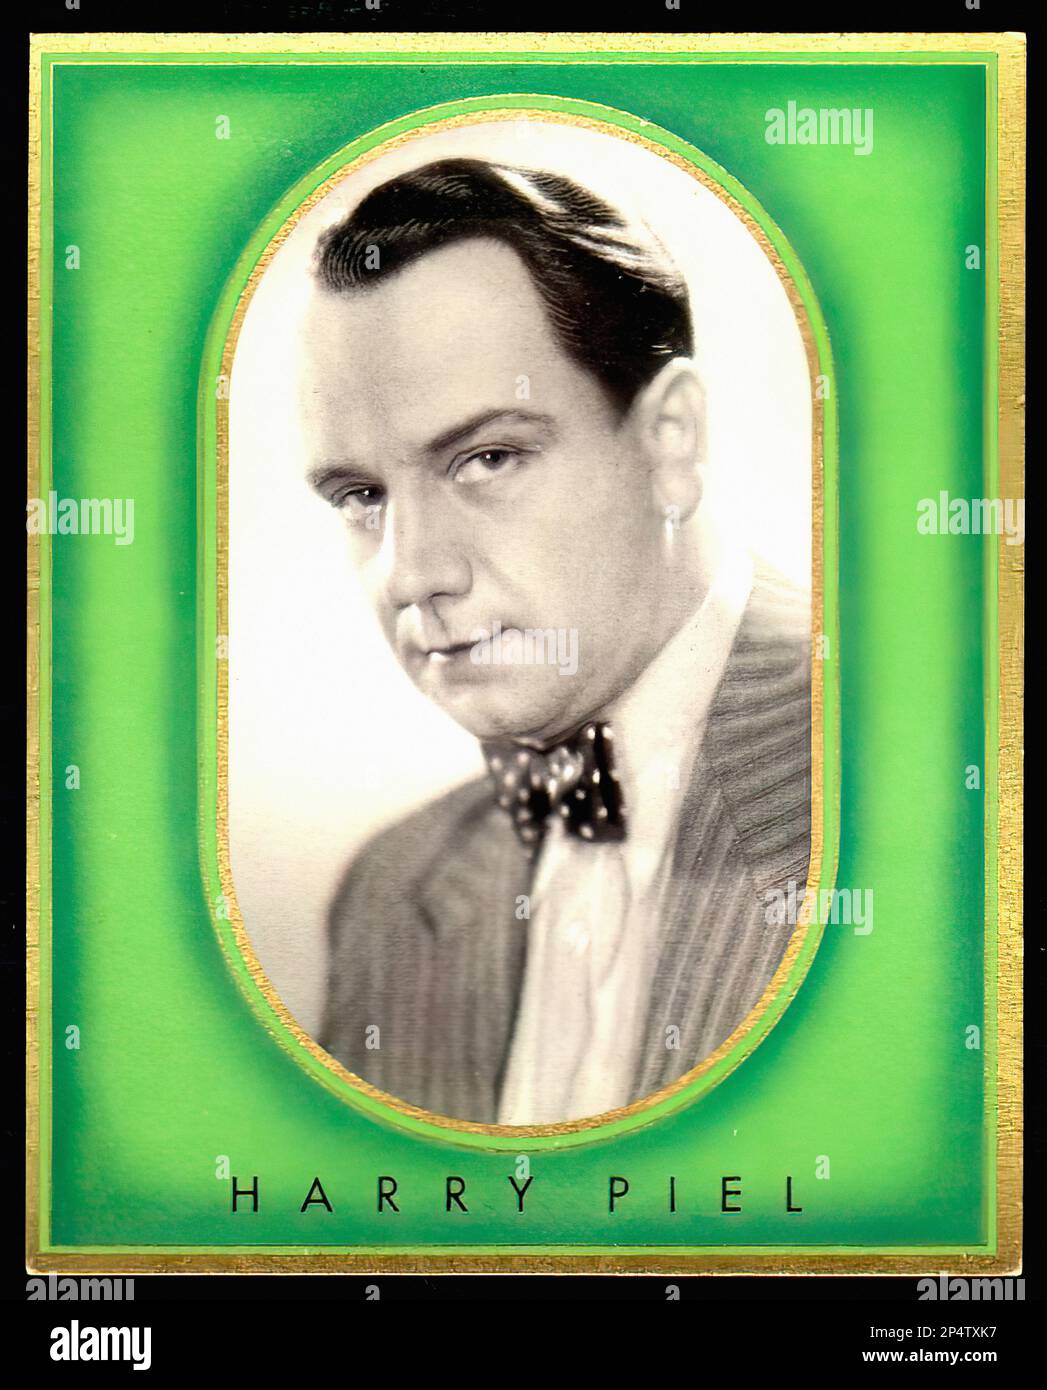 Portrait of Harry Piel - Vintage German Cigarette Card Stock Photo